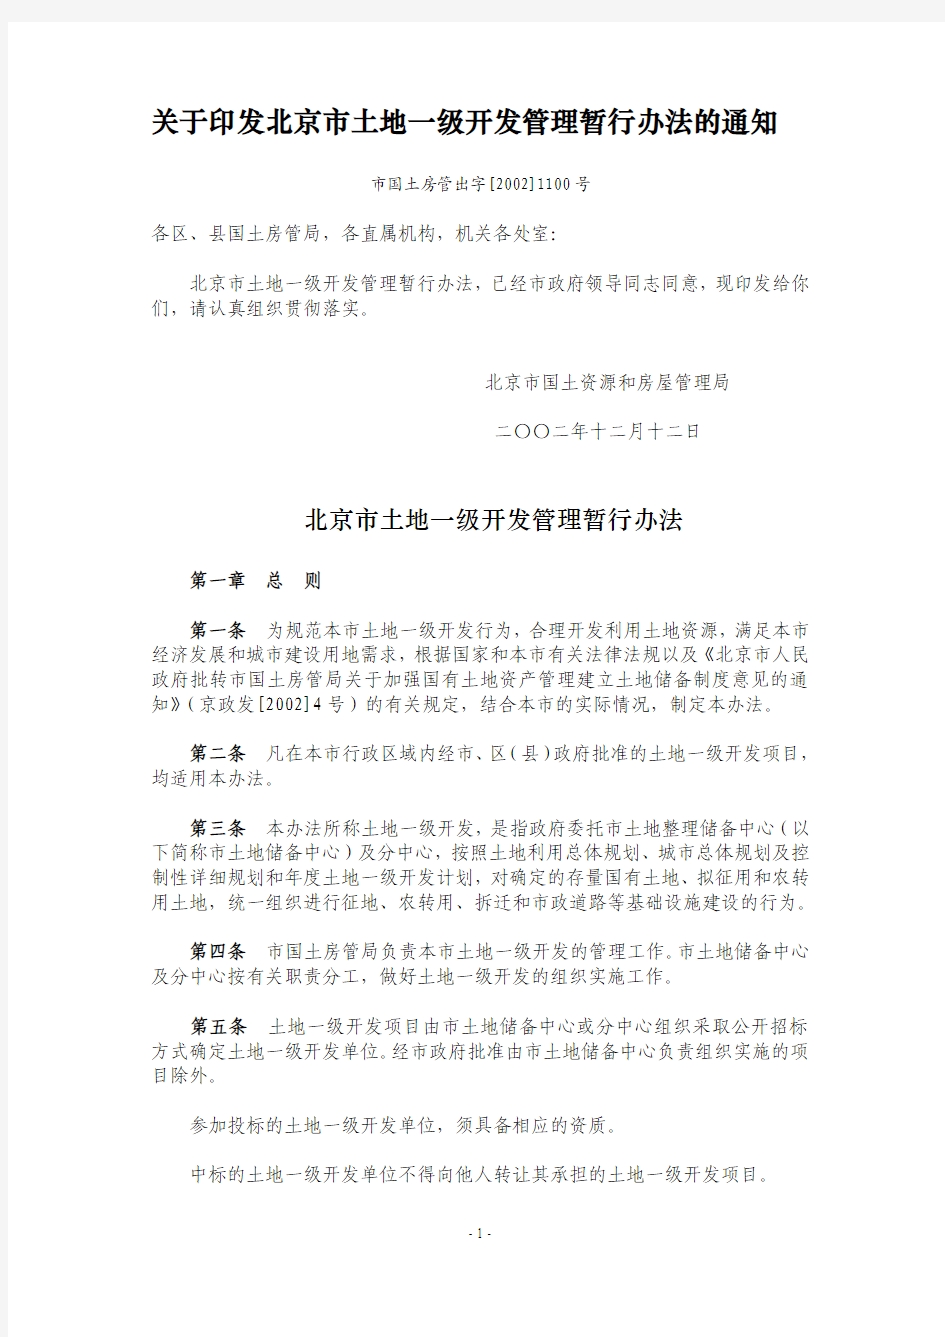 关于印发北京市土地一级开发管理暂行办法的通知